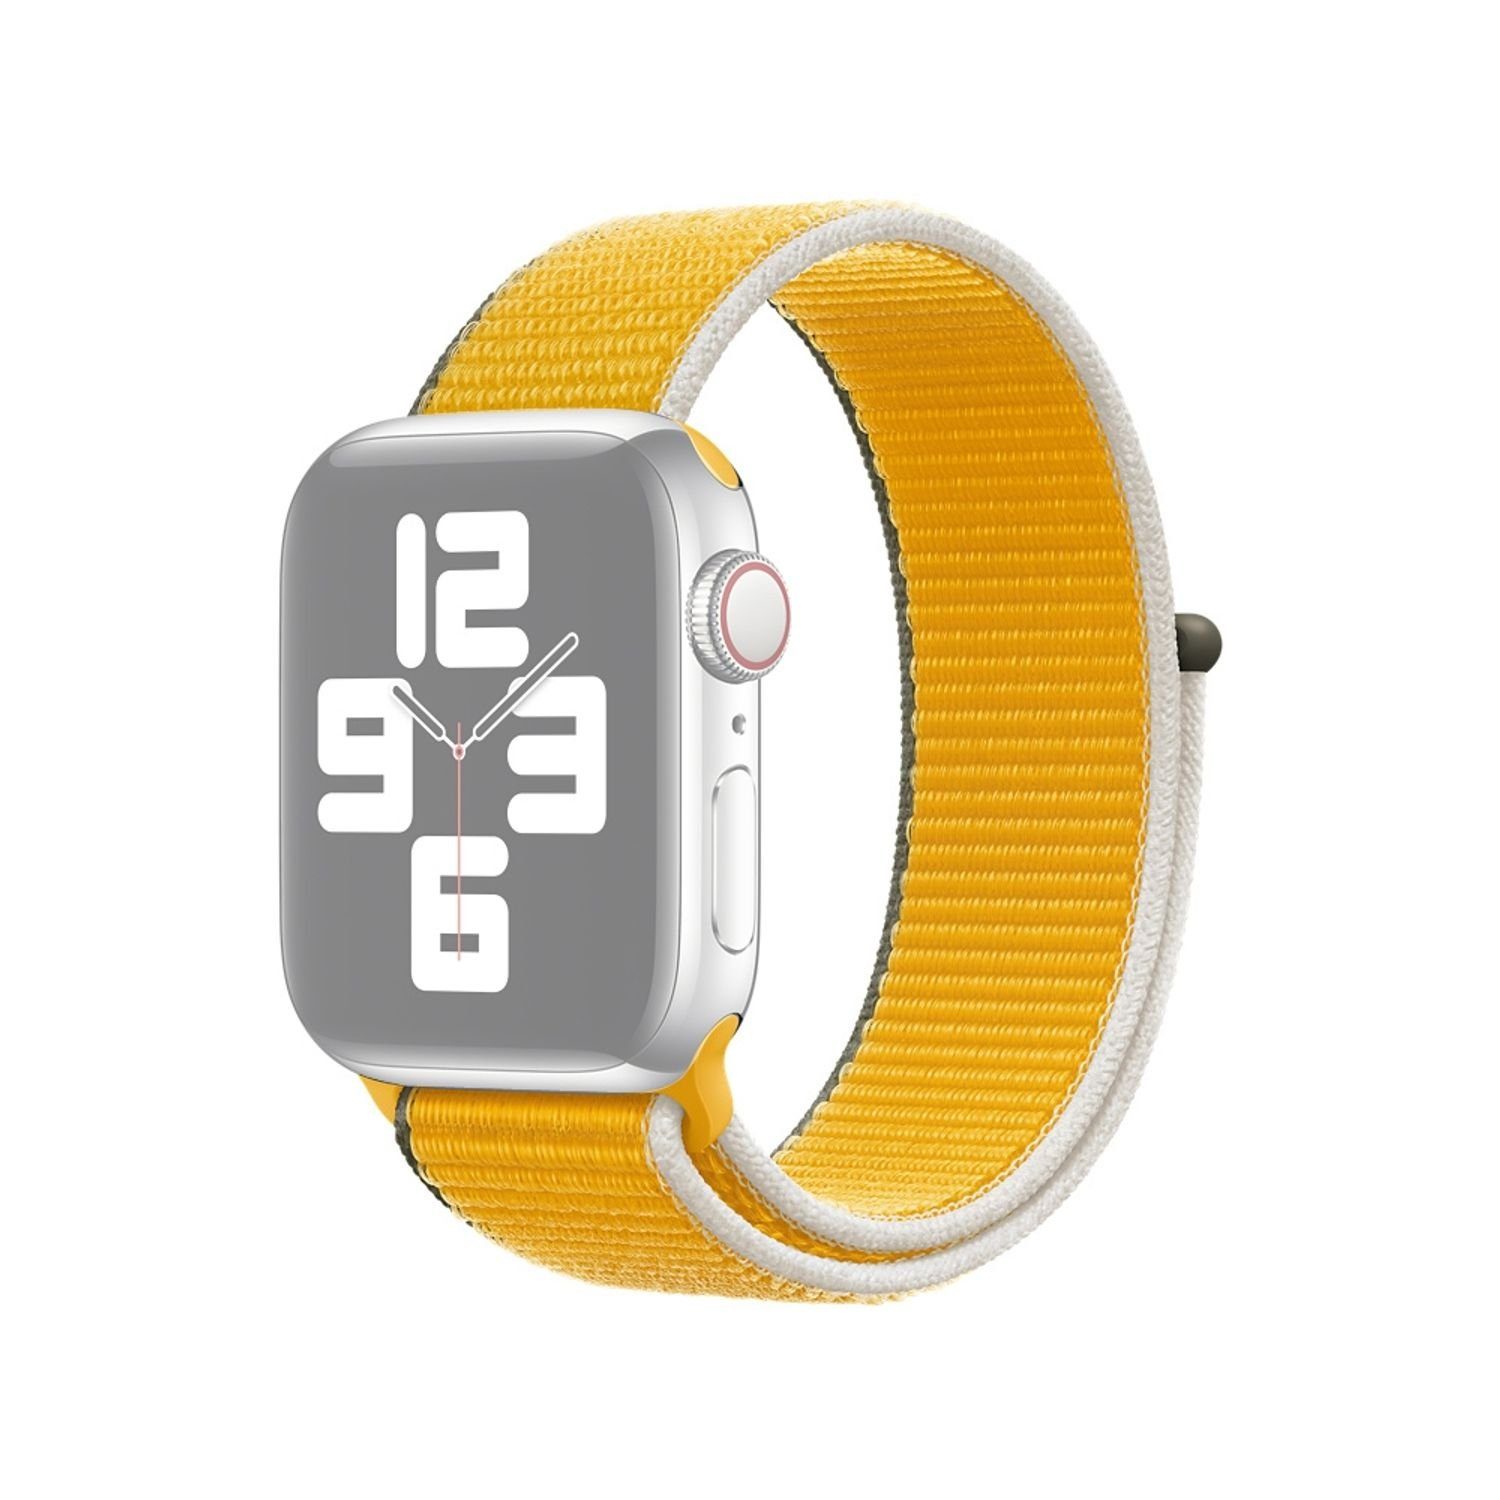 König Design Smartwatch-Armband Apple Watch Series 1/2/3/4/5/6/SE 44-42mm,  Apple Watch Series 1 / 2 / 3 / 4 / 5 / 6 / SE 44-42mm Ersatz Sportarmband  Gelb